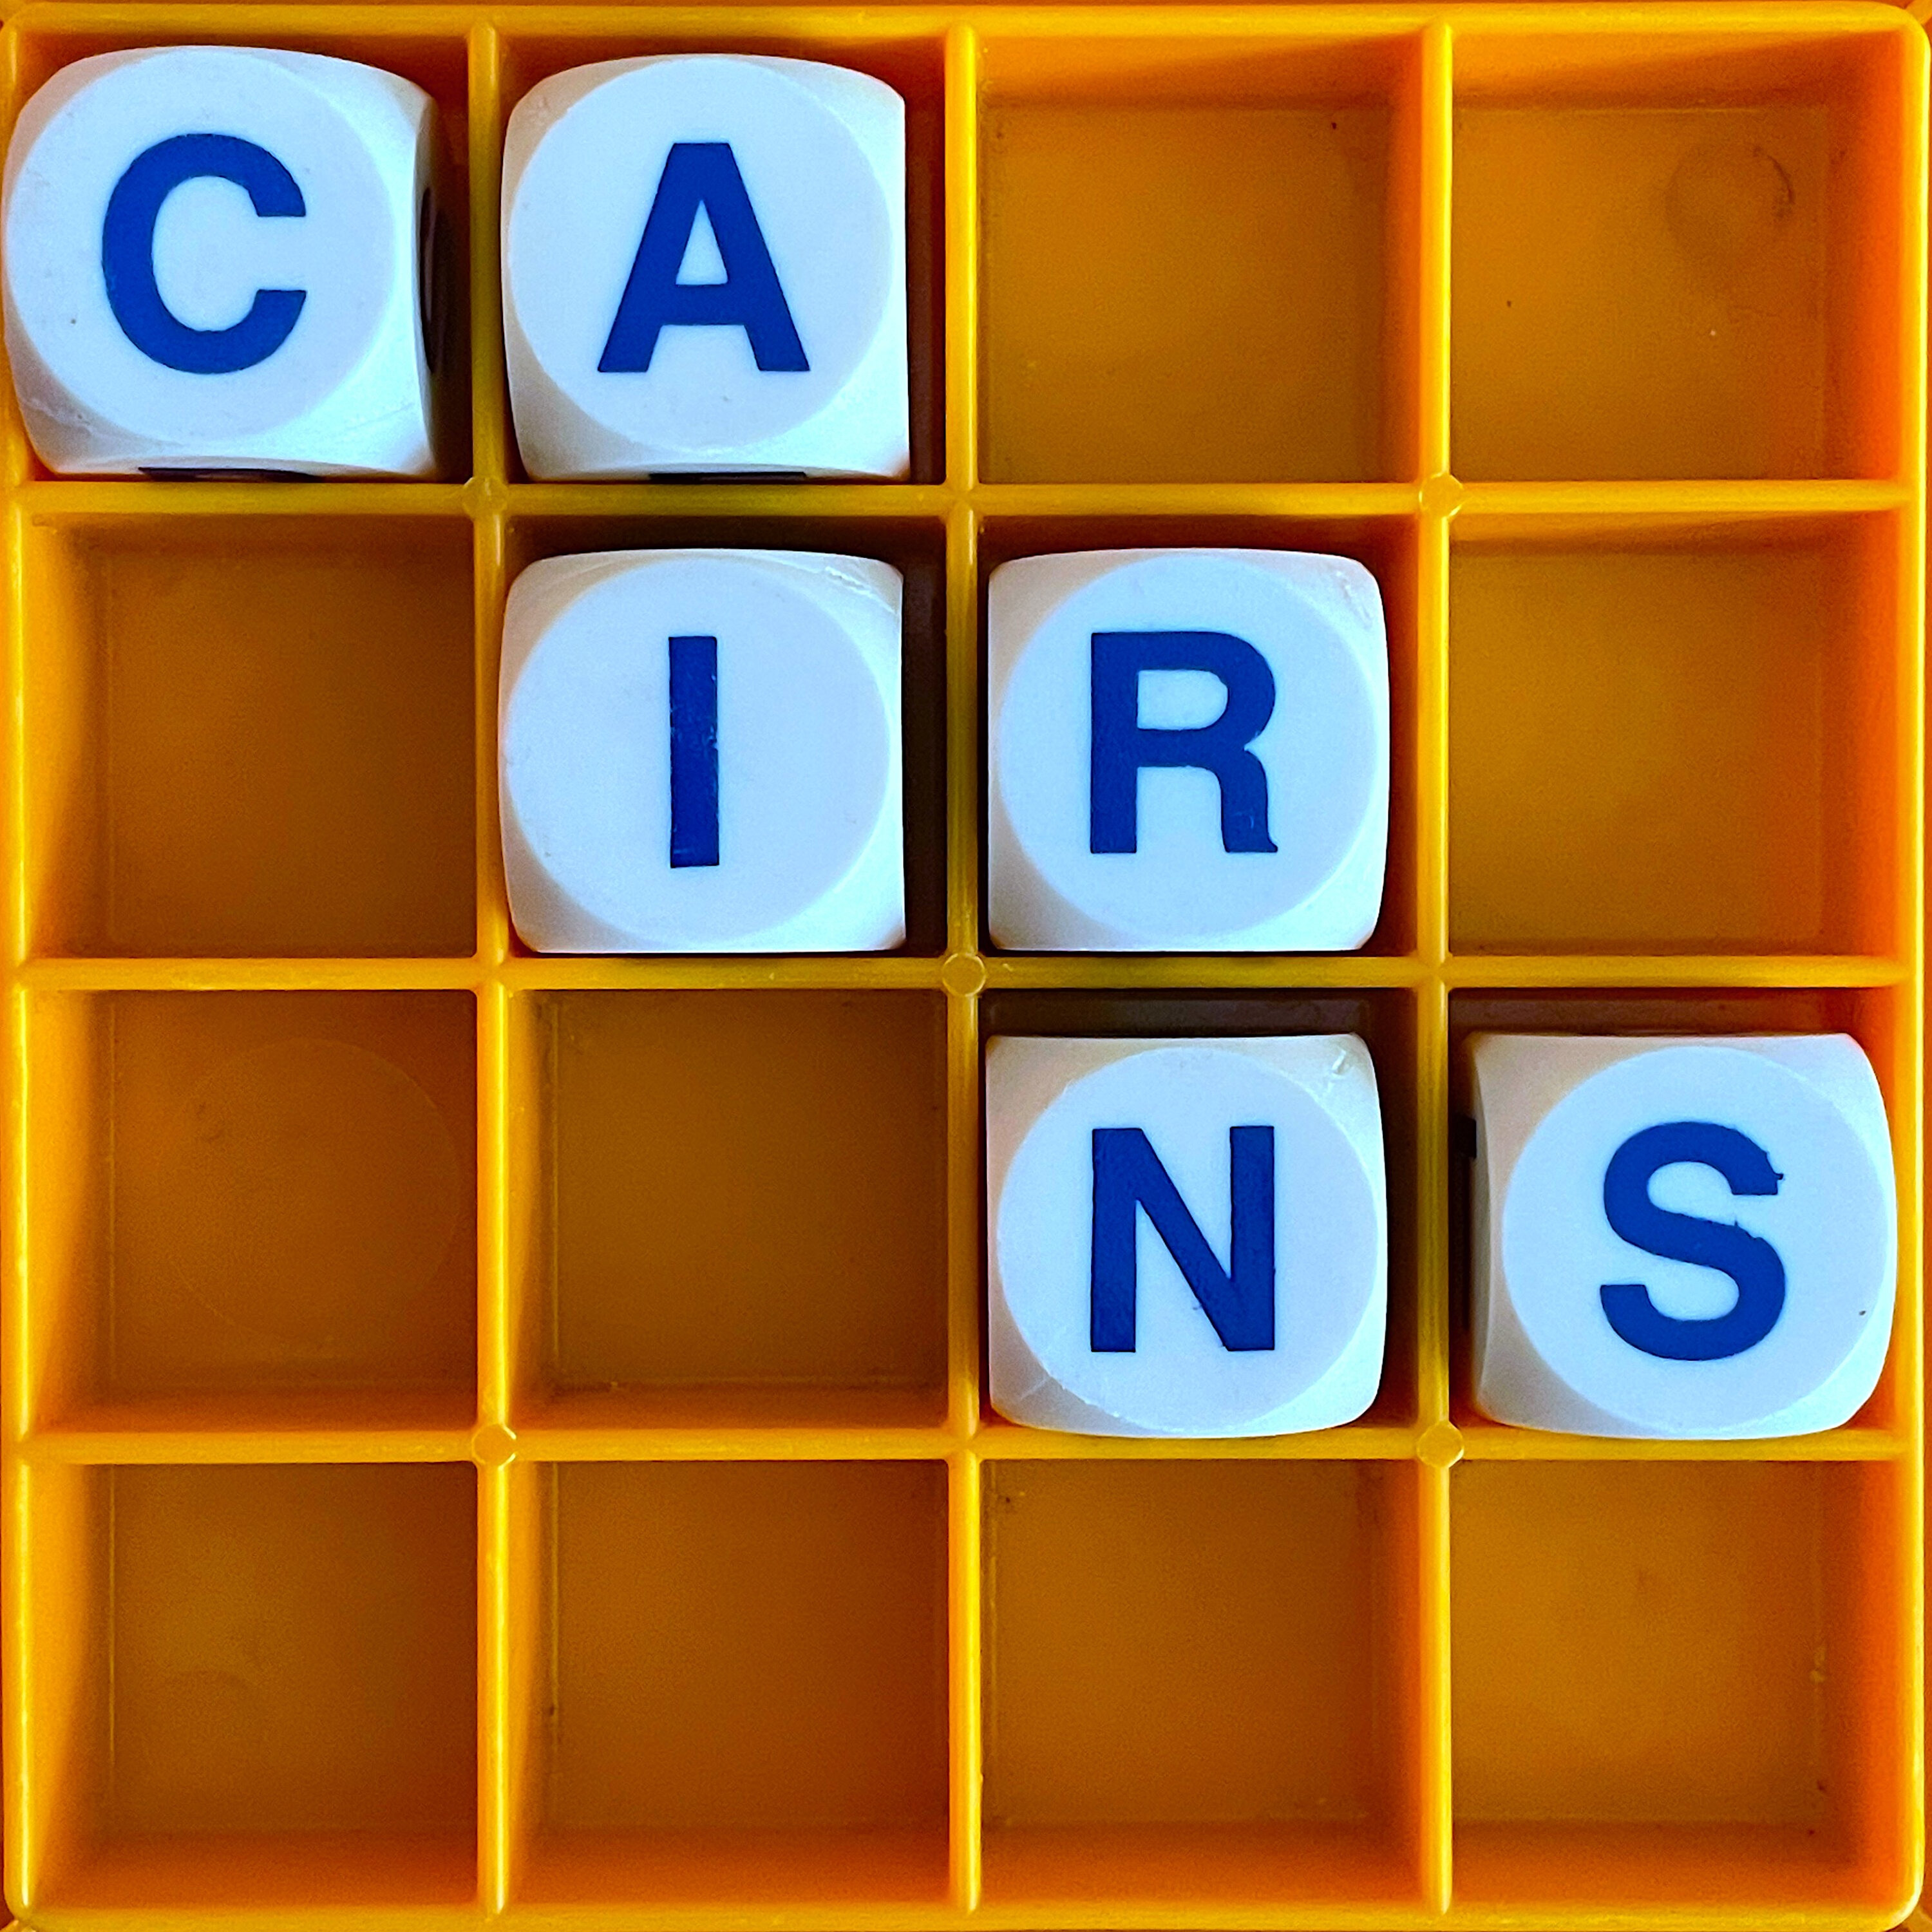 181. Cairns